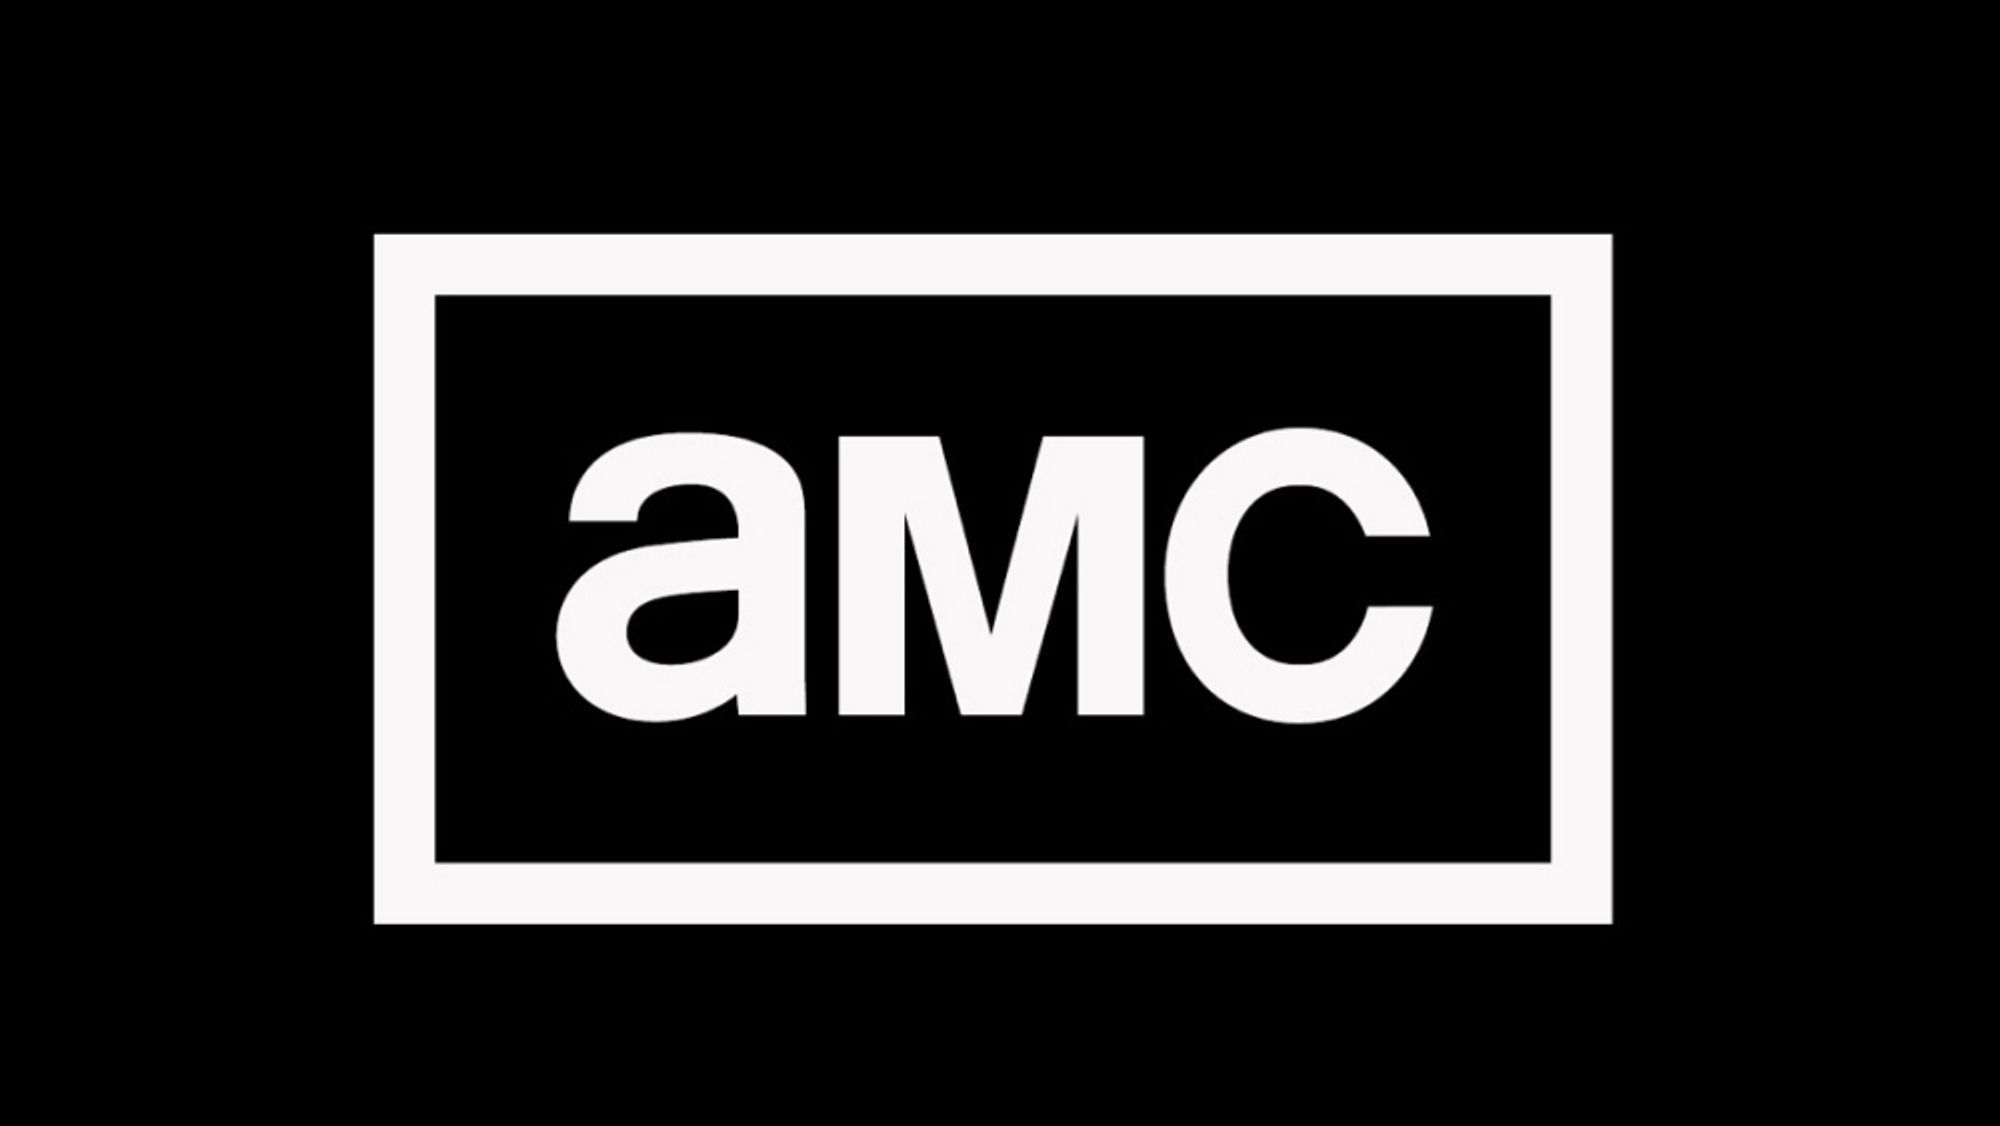 amc-logo.jpg